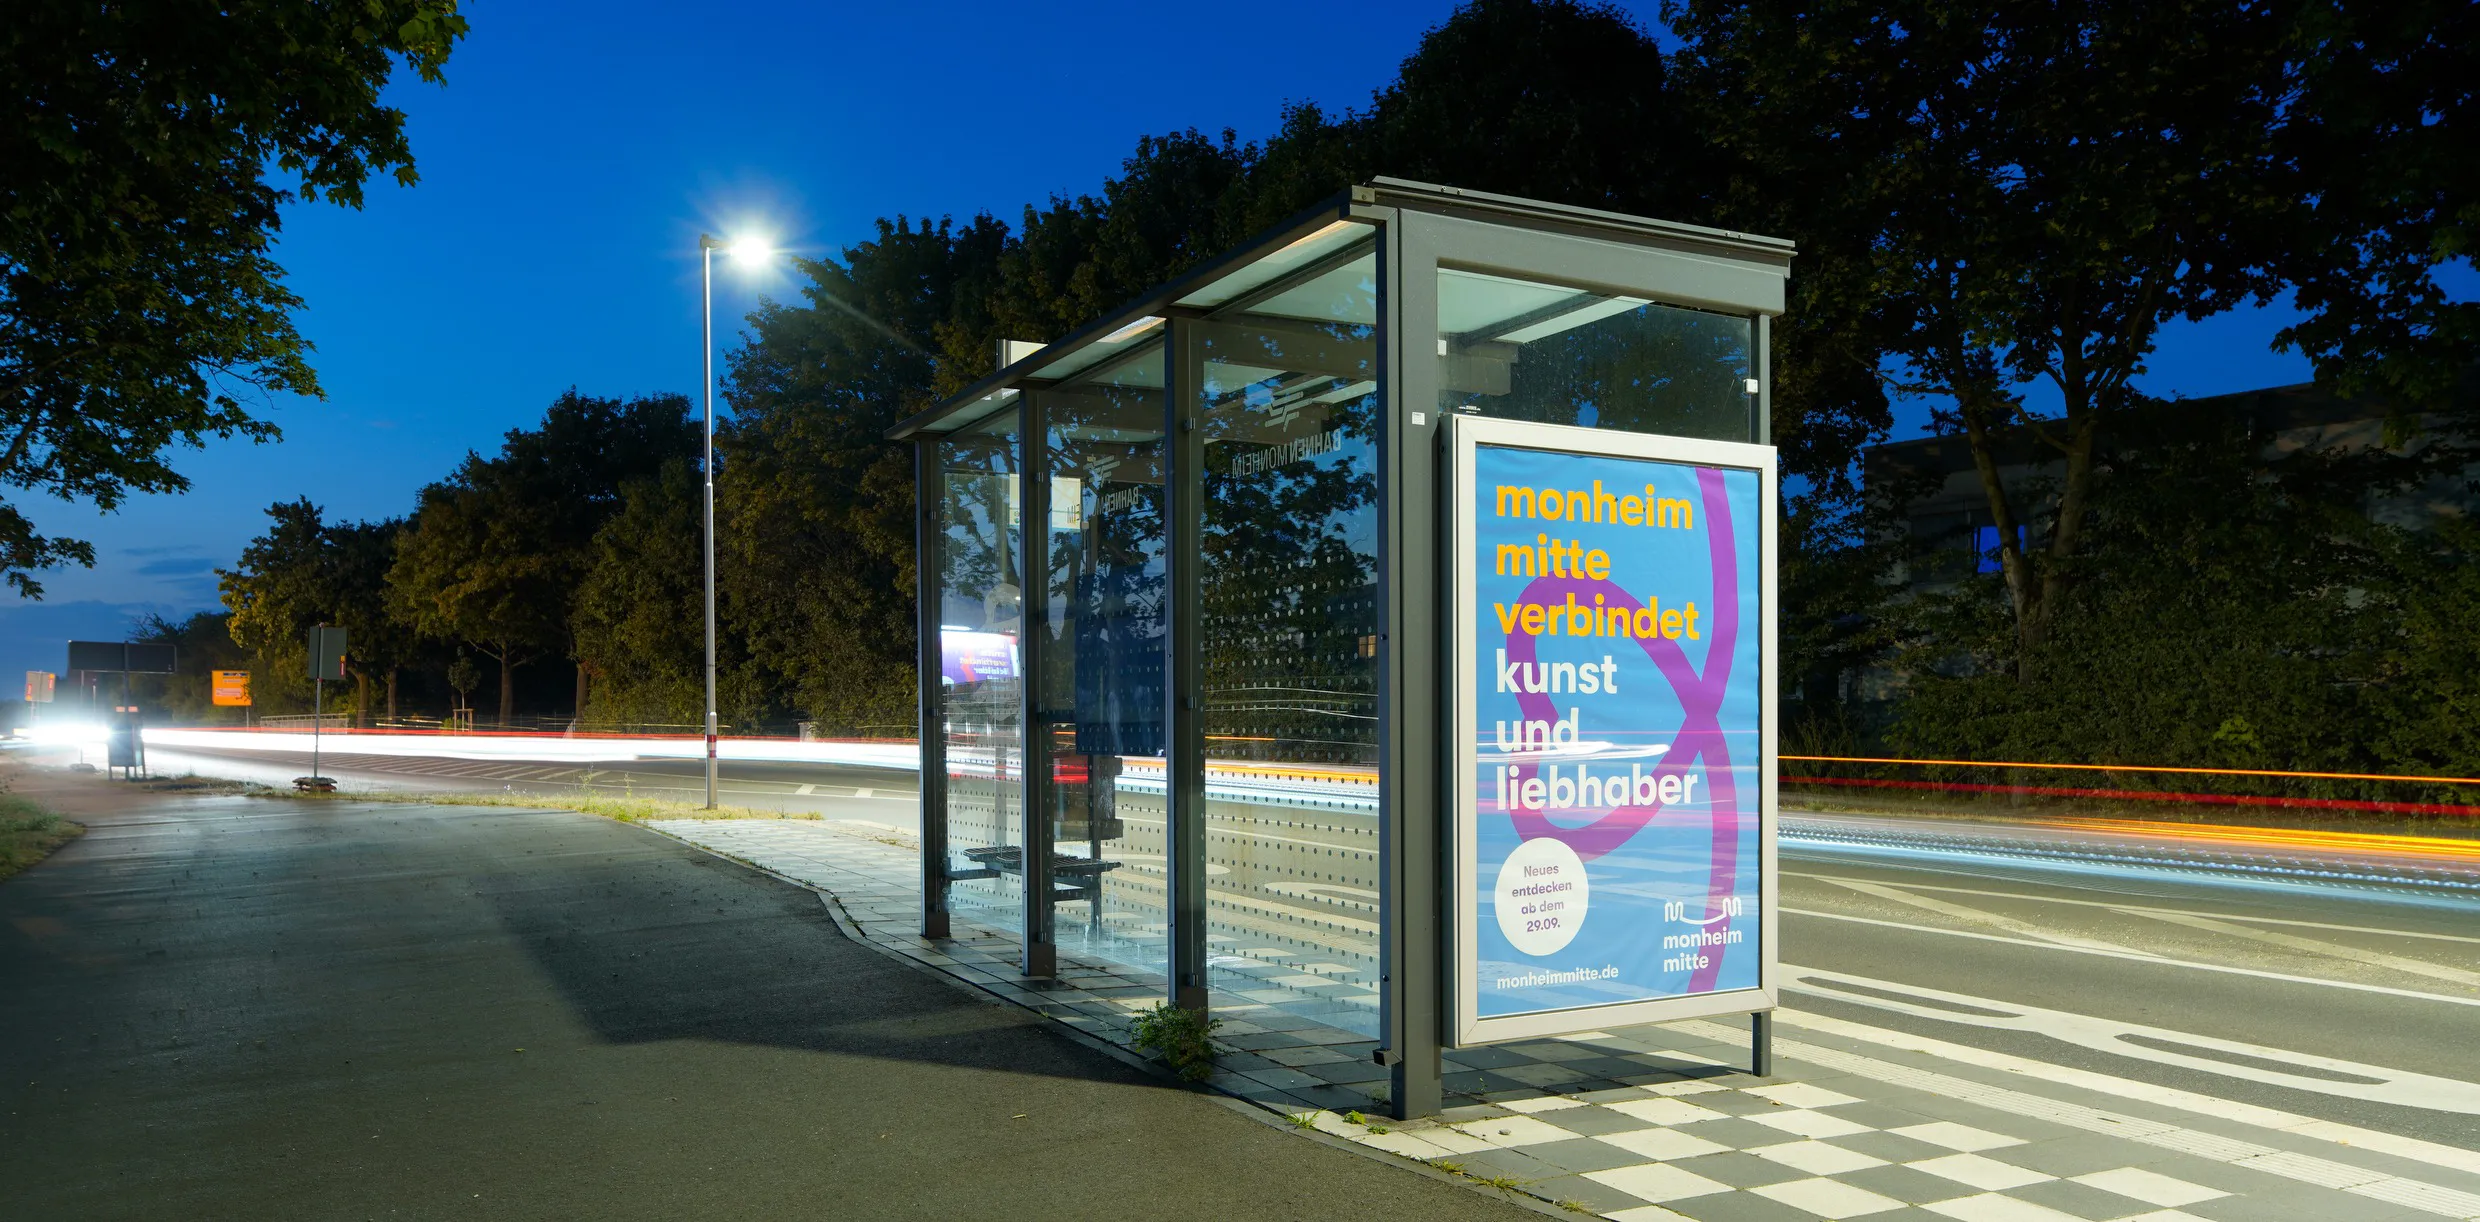 Plakat der Kampagne Monheim Mitte auf einem Buswartehäuschen in einer abendlichen Außenanlage. Titel auf Plakat: monheim mitte verbindet kunst und liebhaber